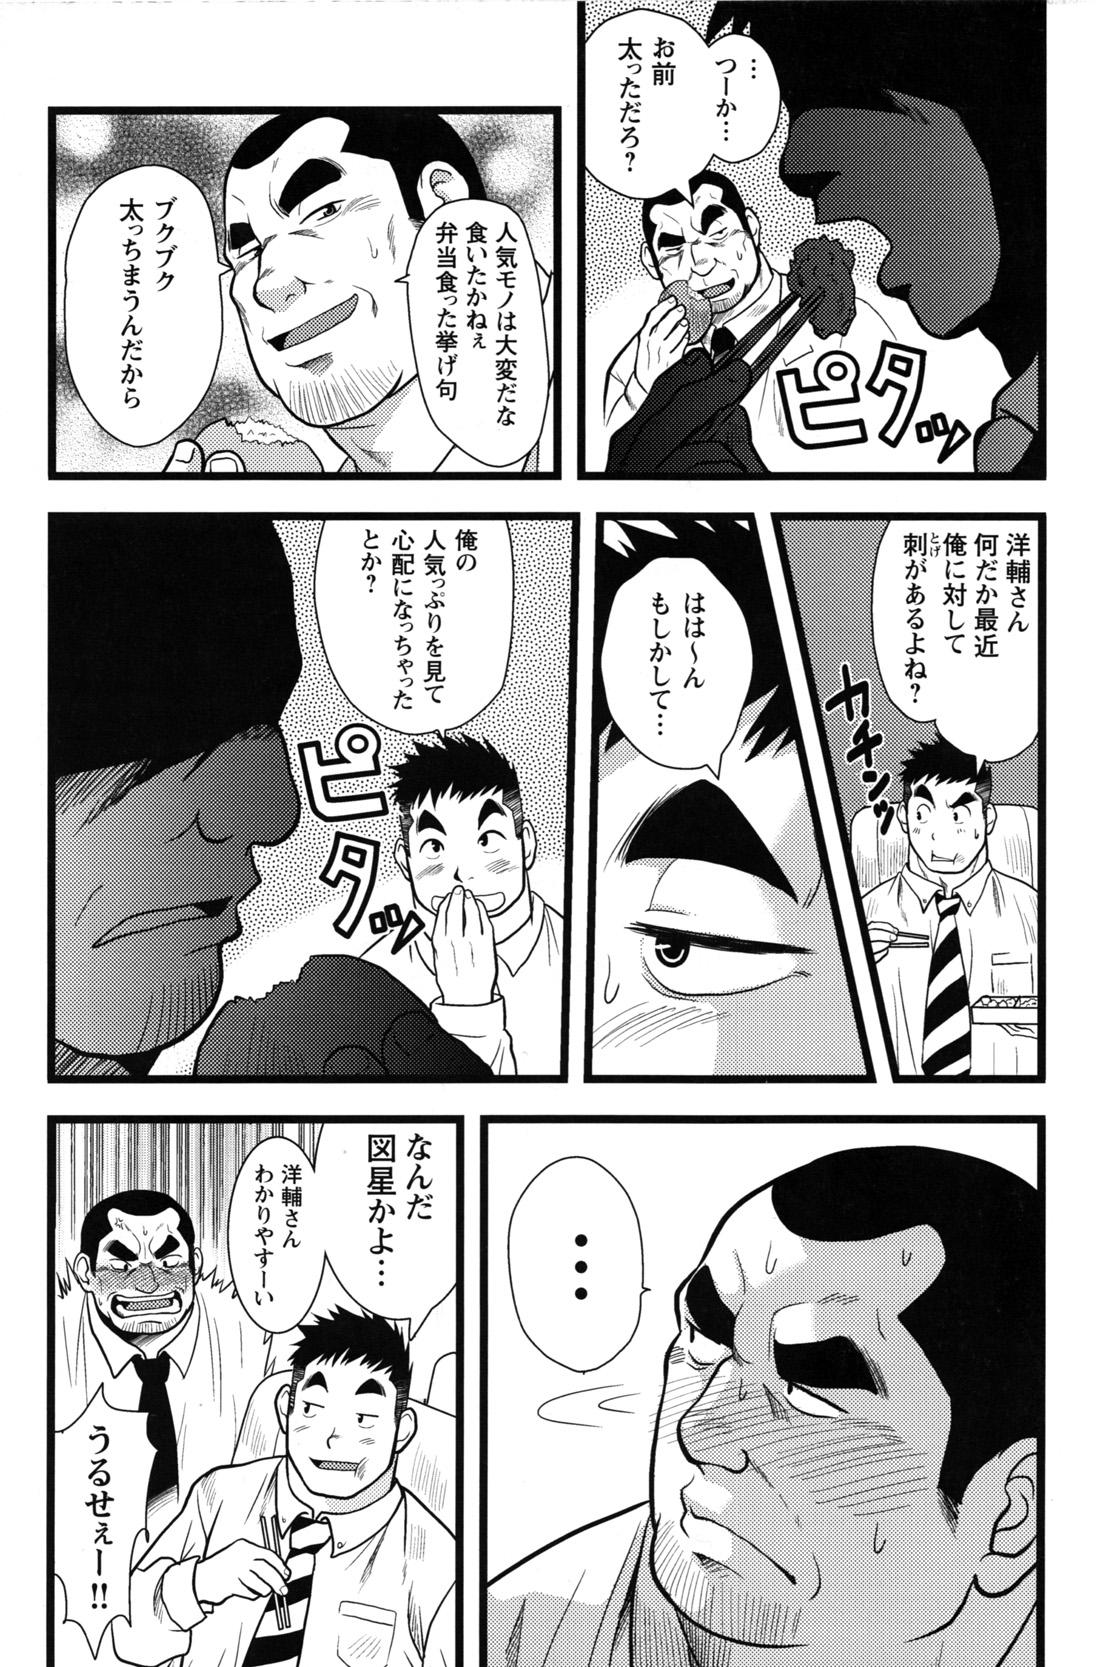 Comic G-men Gaho No.12 Aibou 146